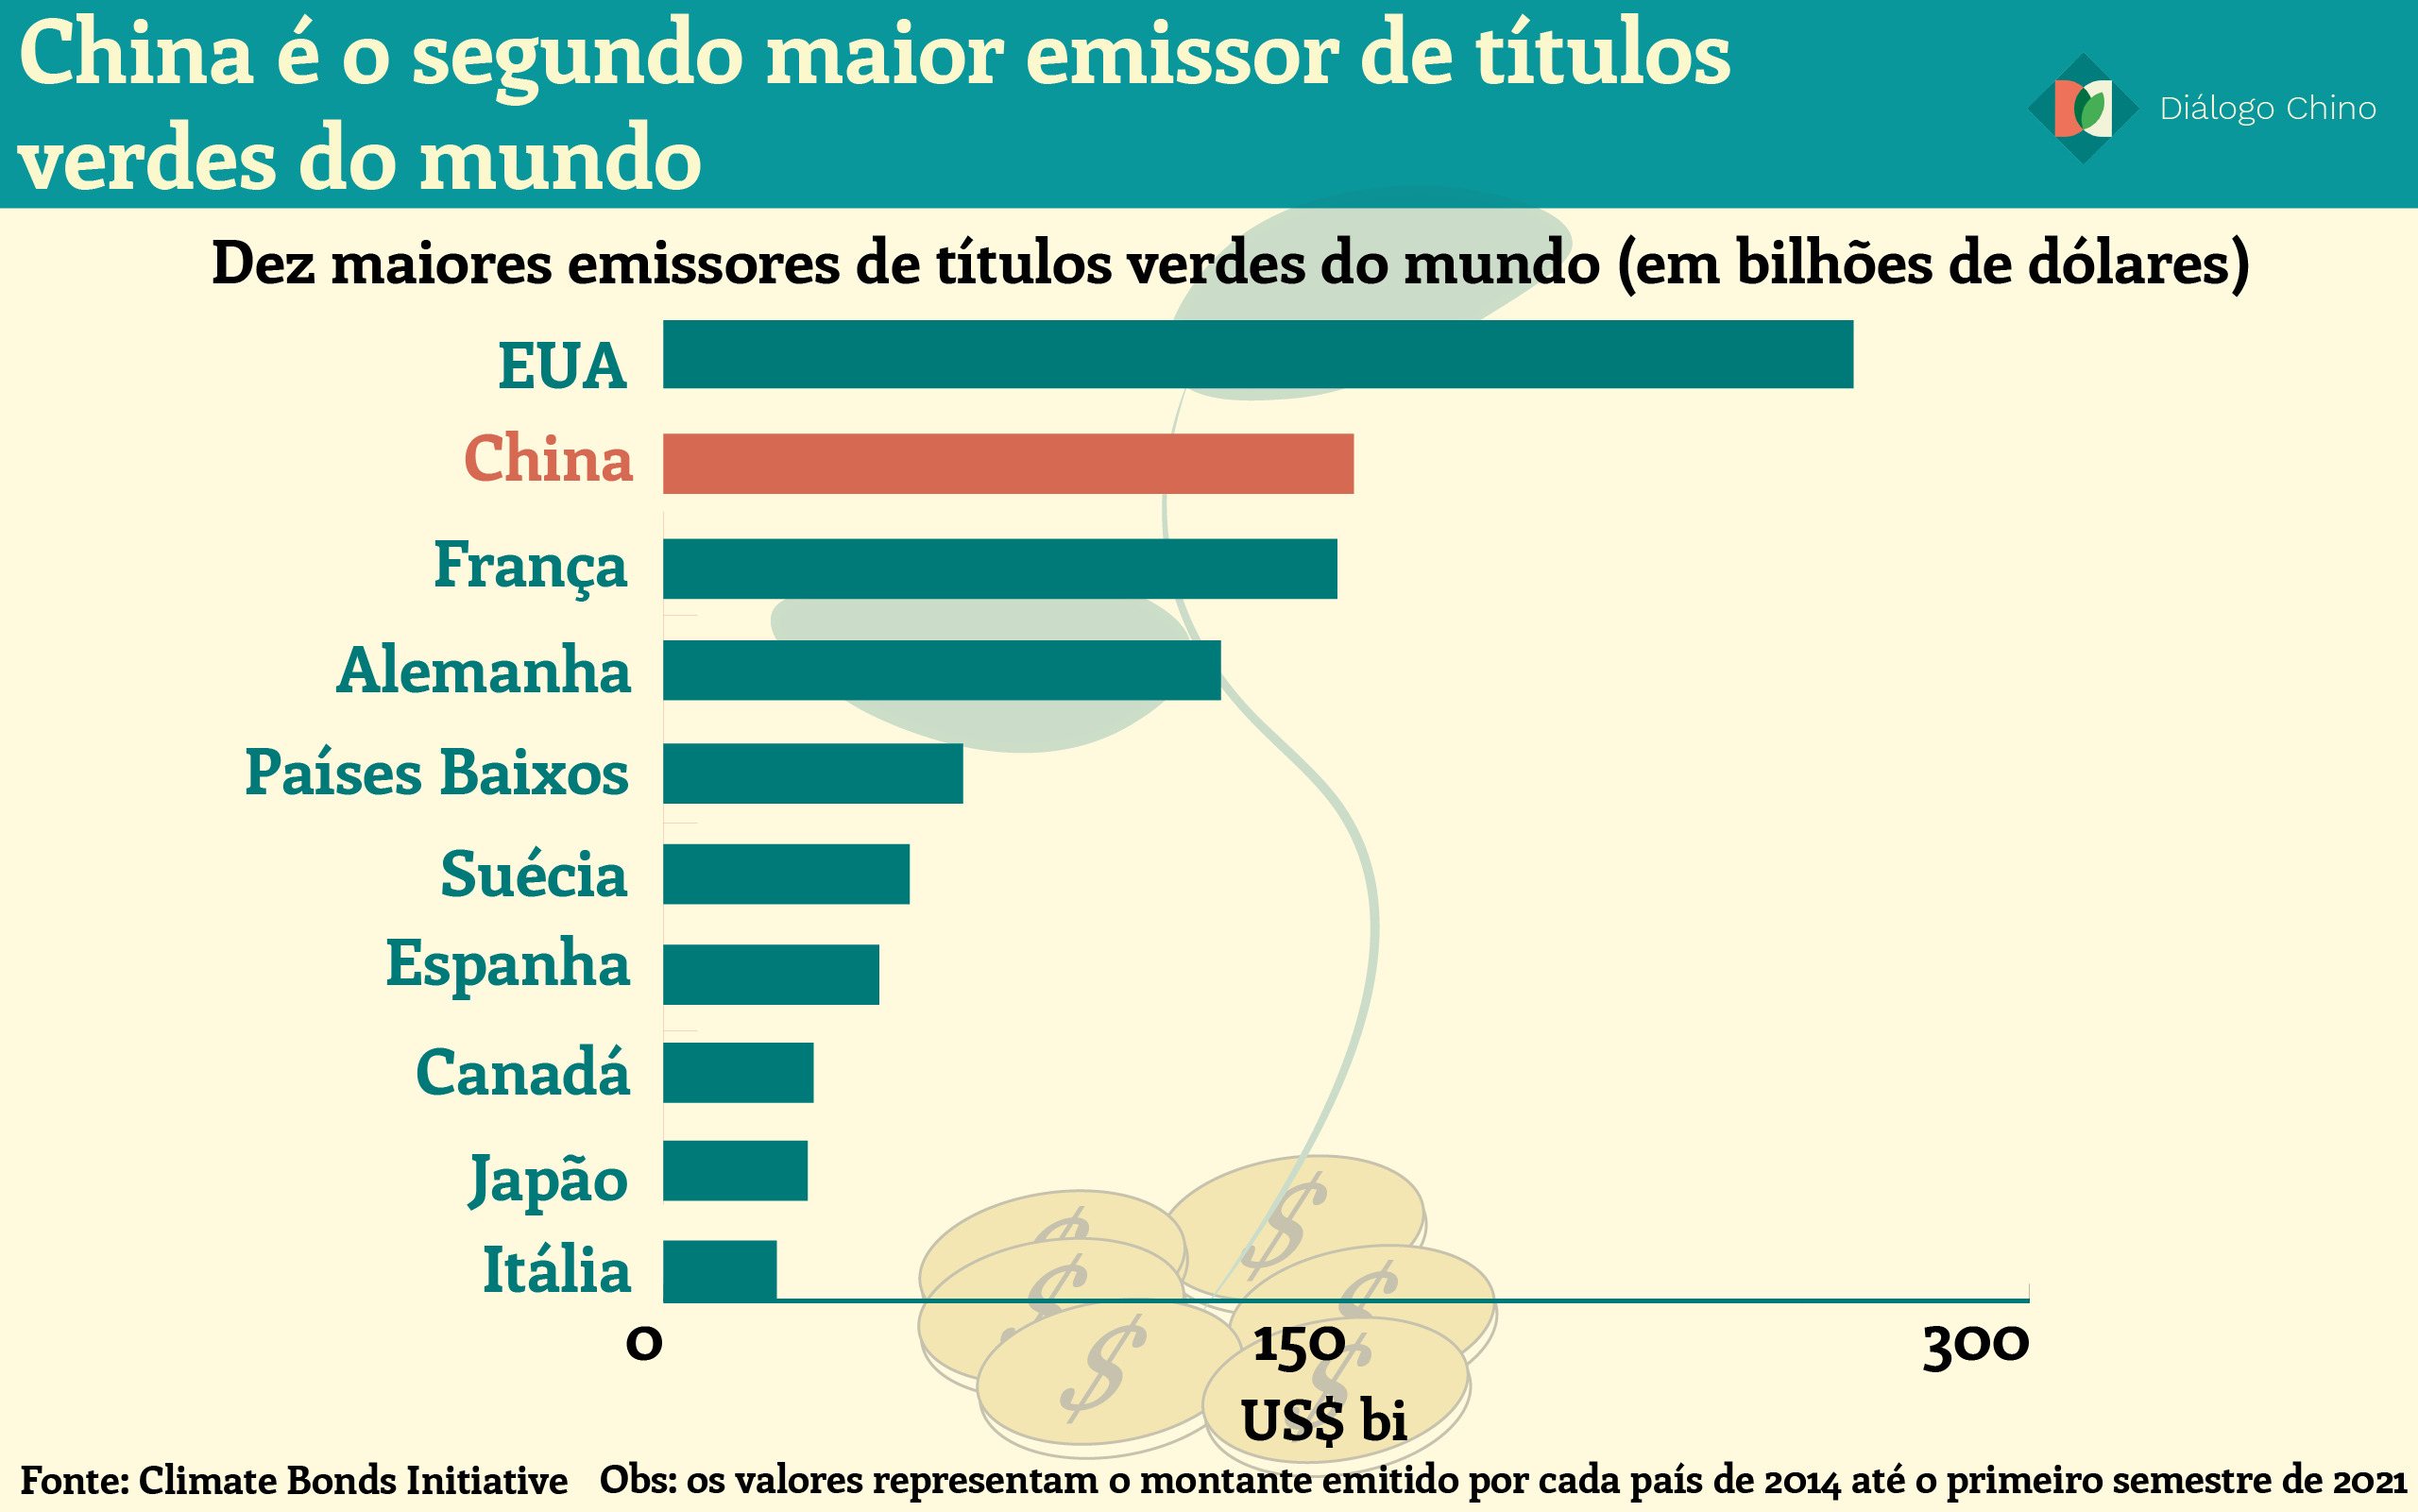 Gráfico de barras mostrando os 10 principais países emissores de títulos verdes do mundo